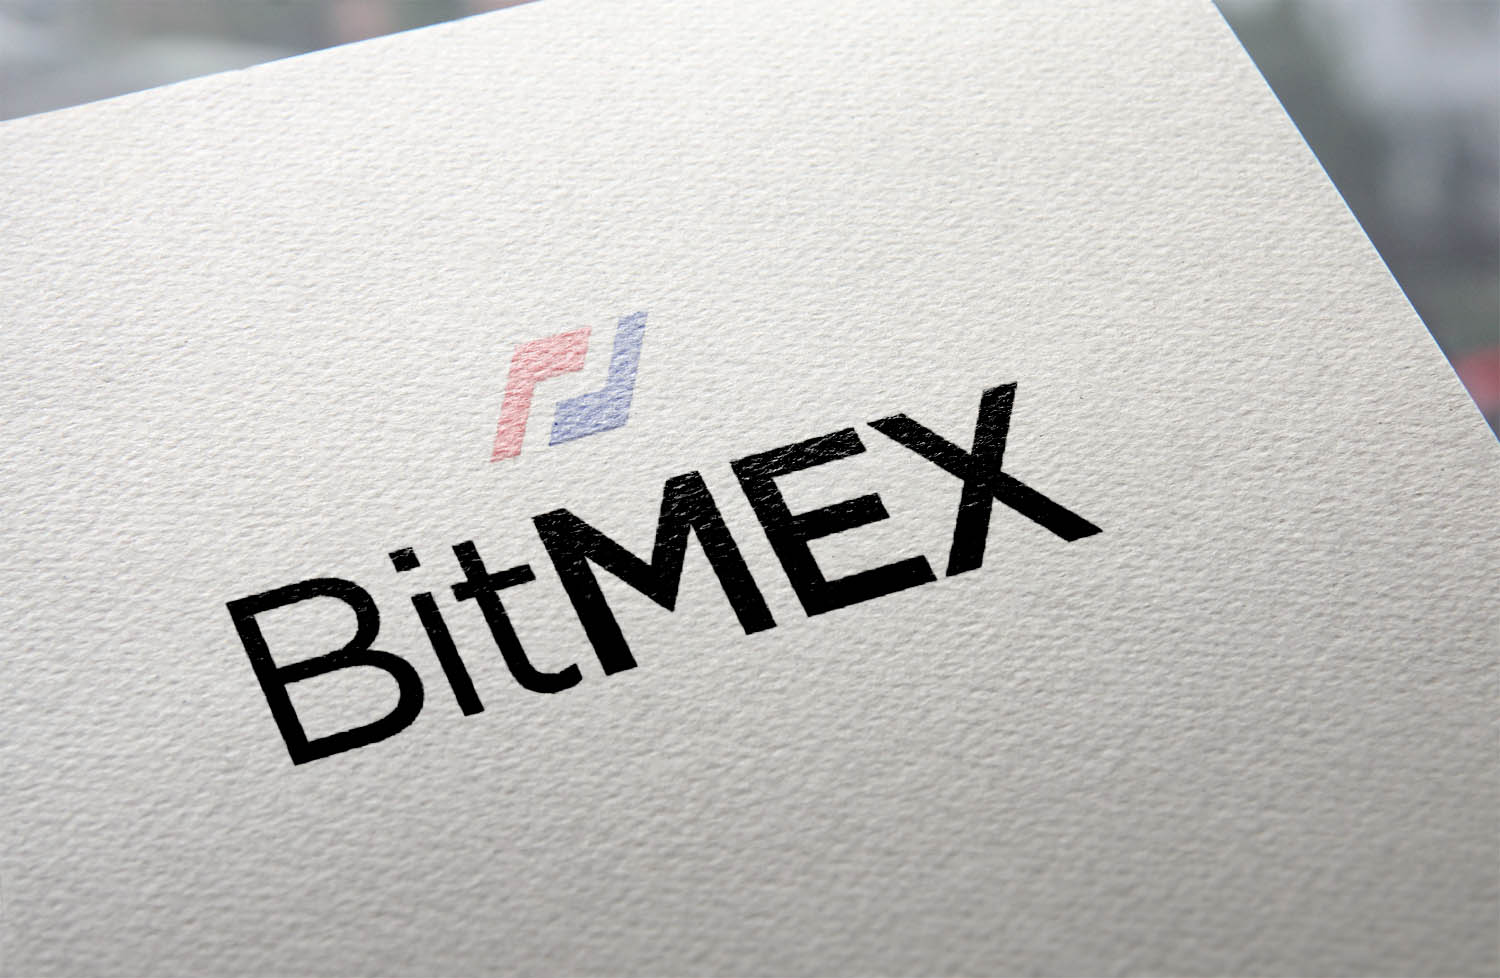    bitmex     